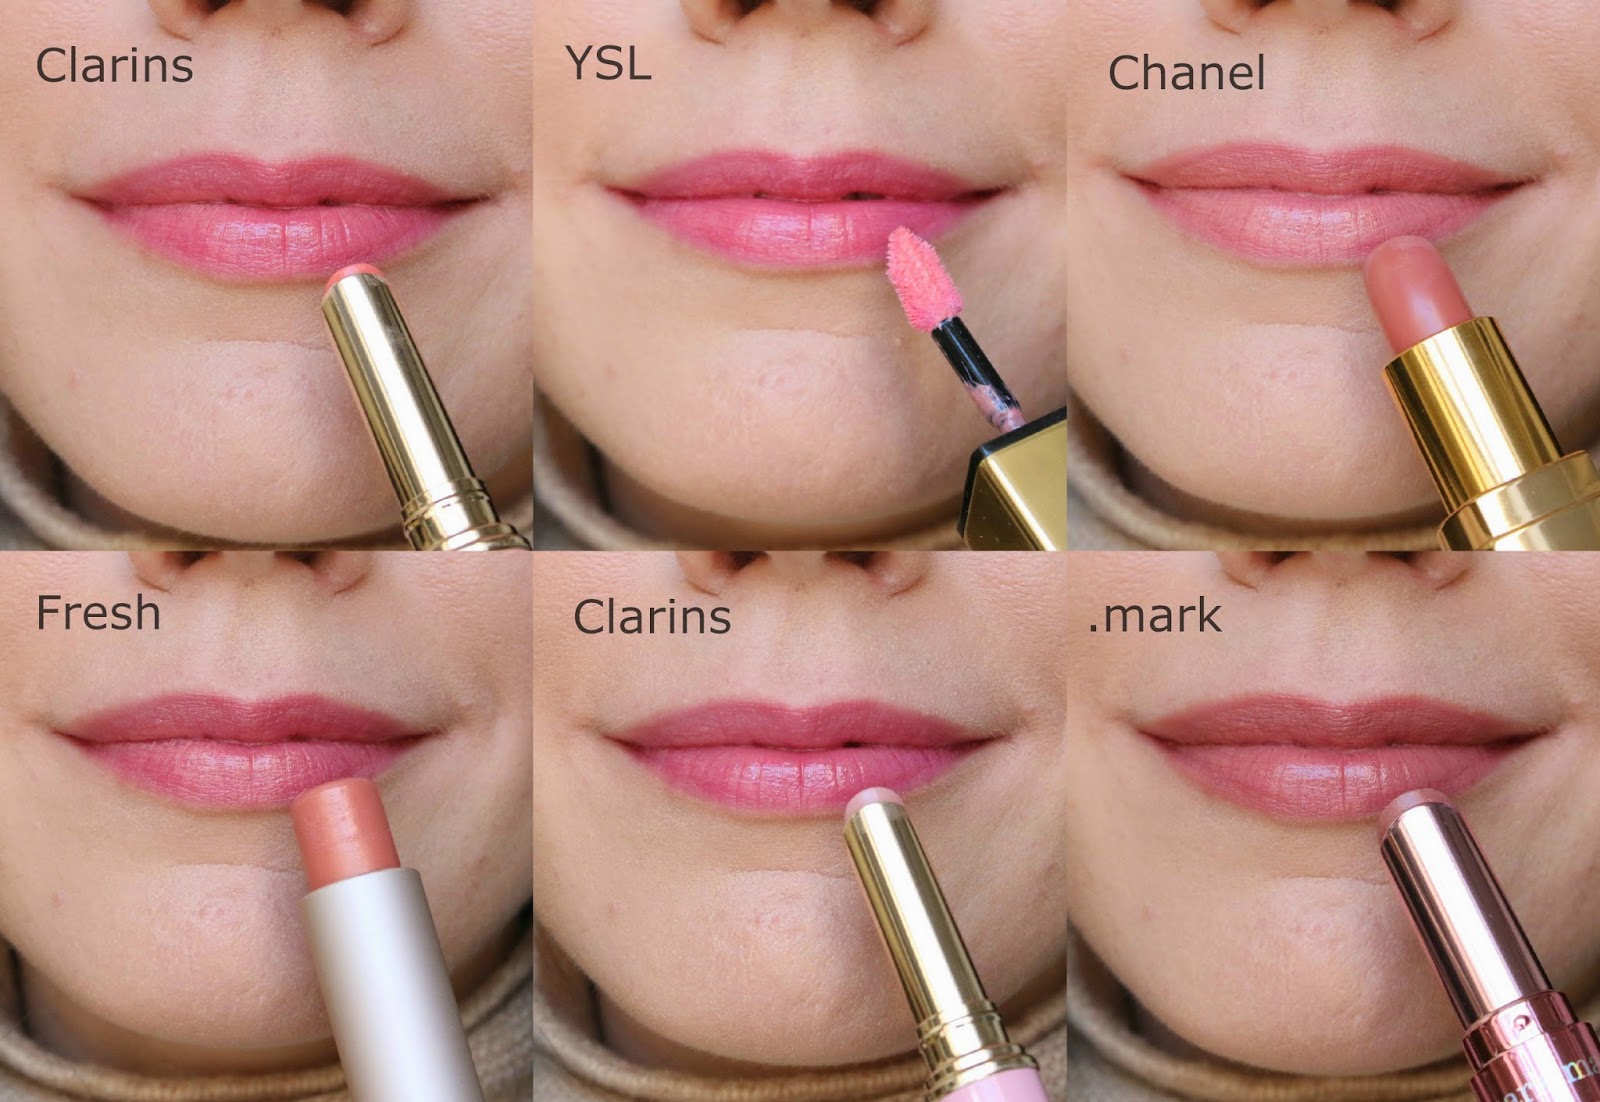 CHANEL NUDE LIPSTICKS 🤎 CHANEL FALL 2022 Rouge Allure Lipstick